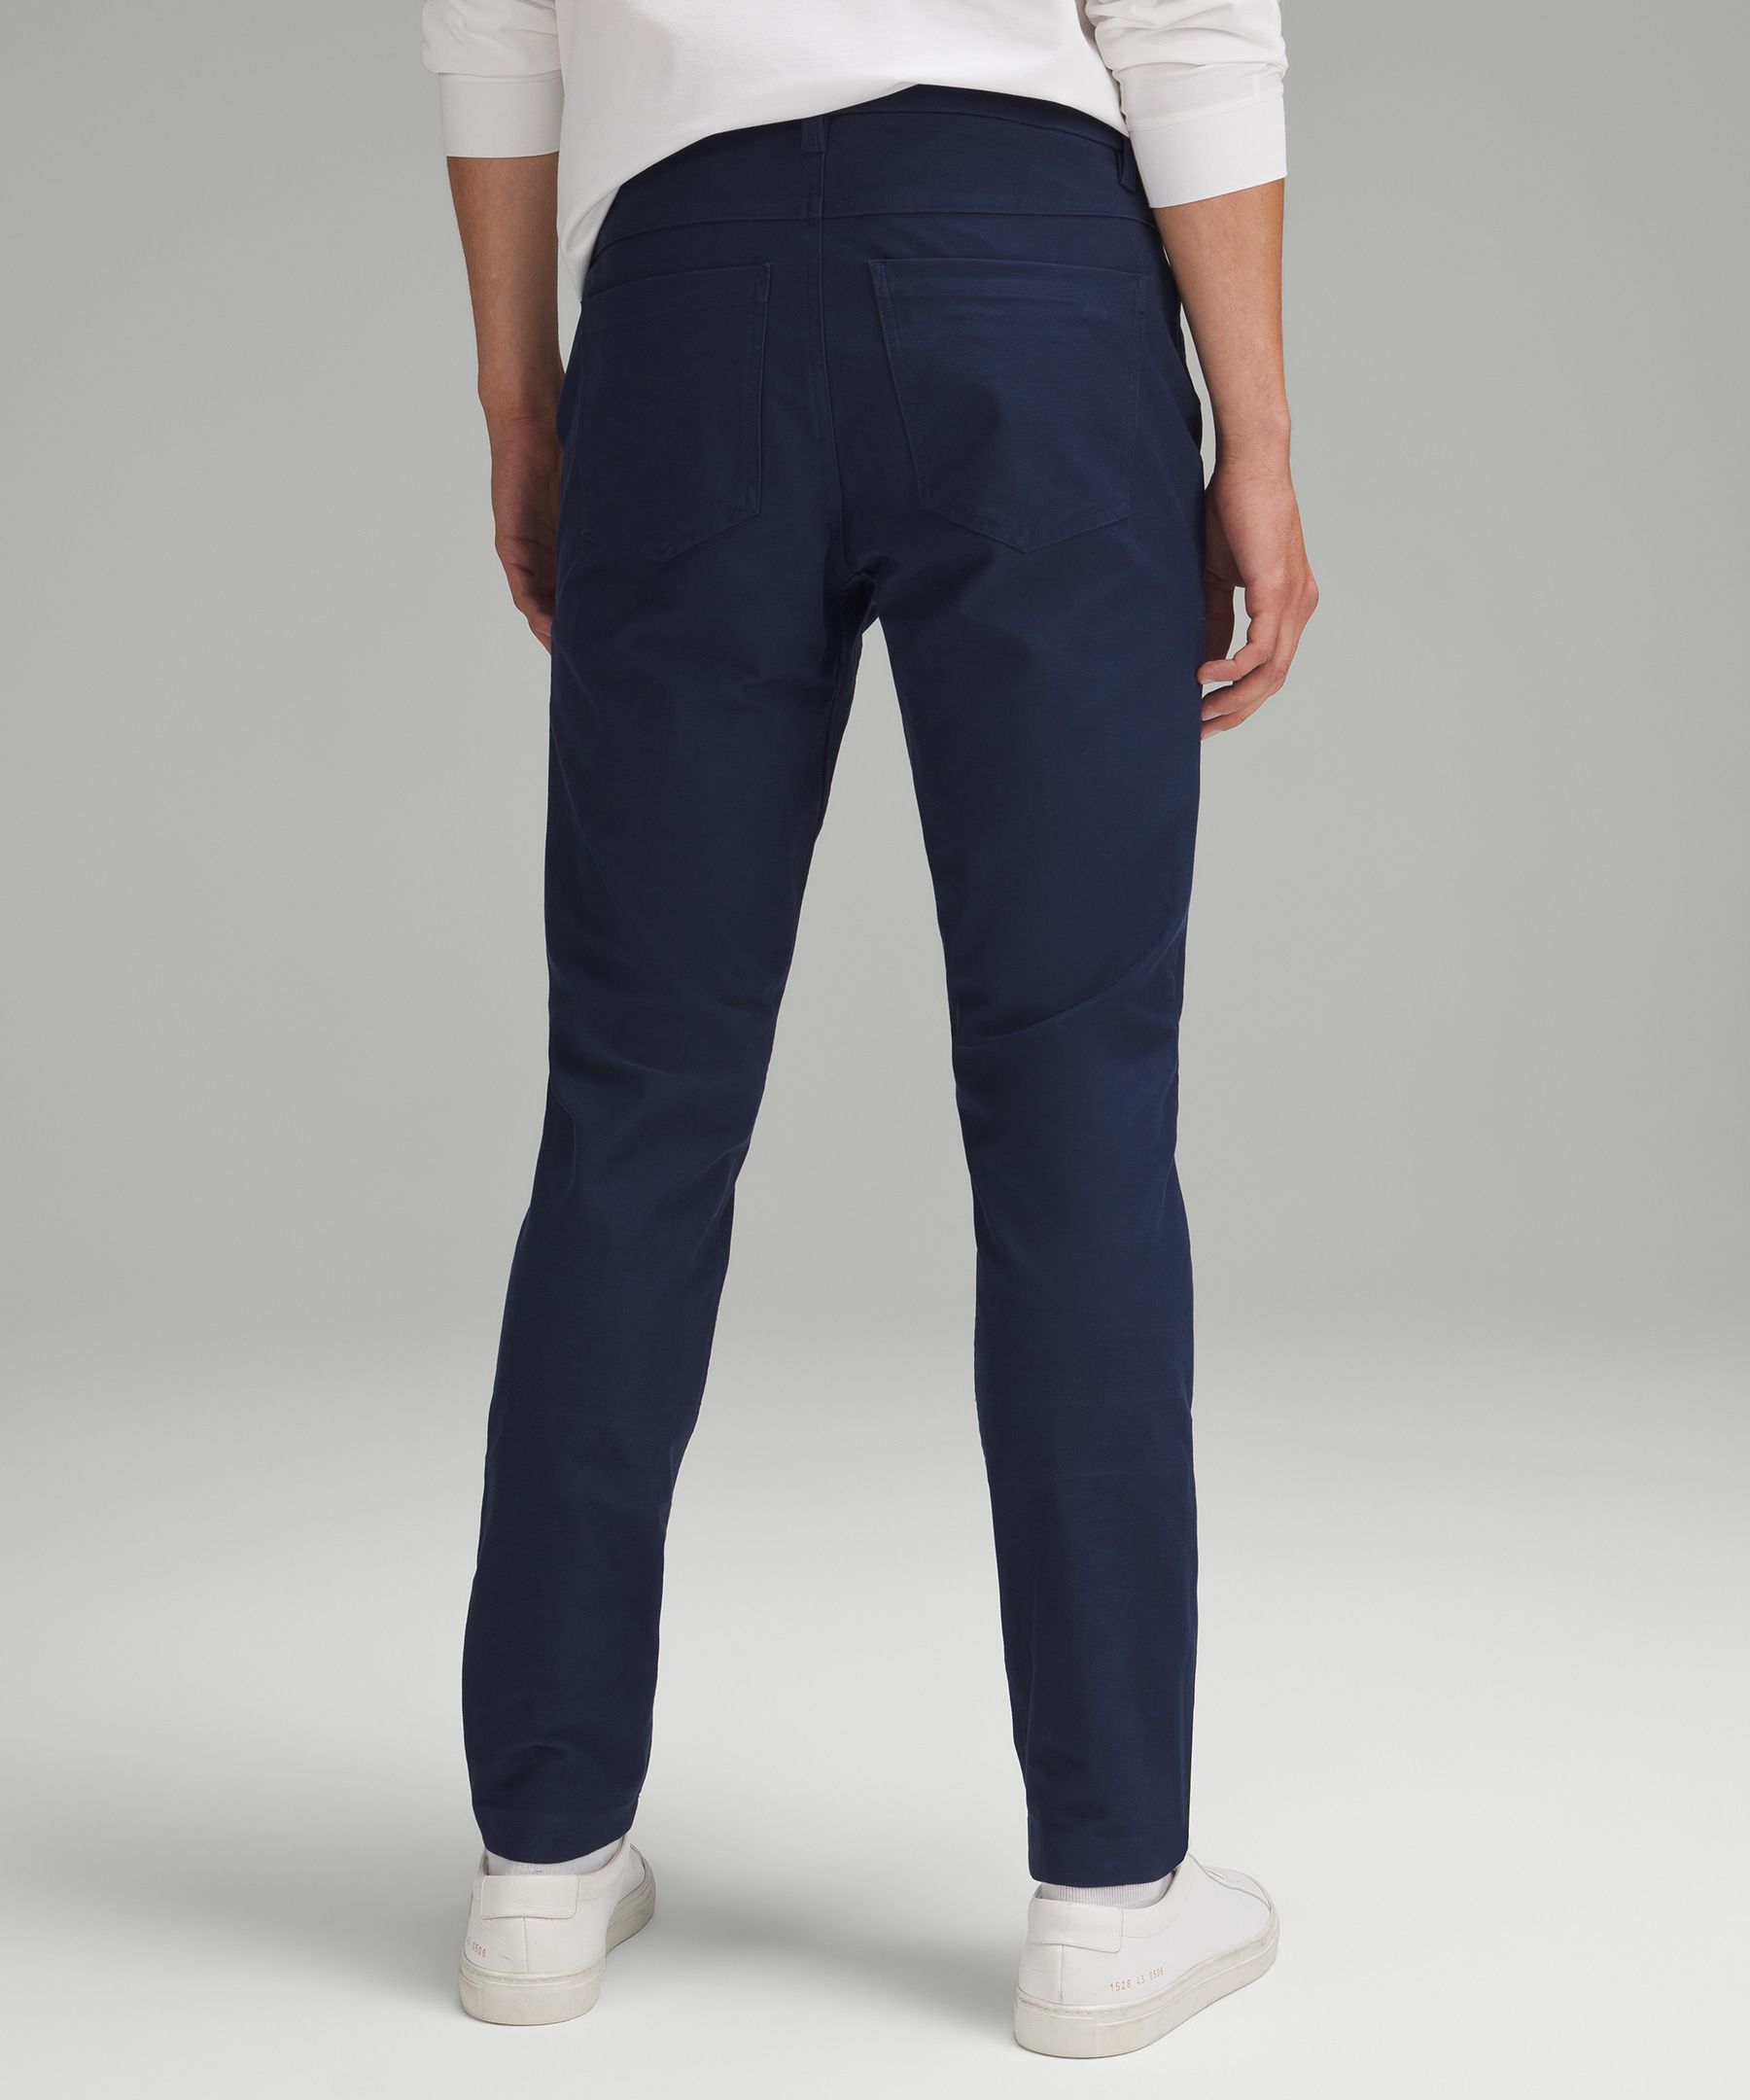 ABC Slim-Fit 5 Pocket Pant 32L *Utilitech, Men's Trousers